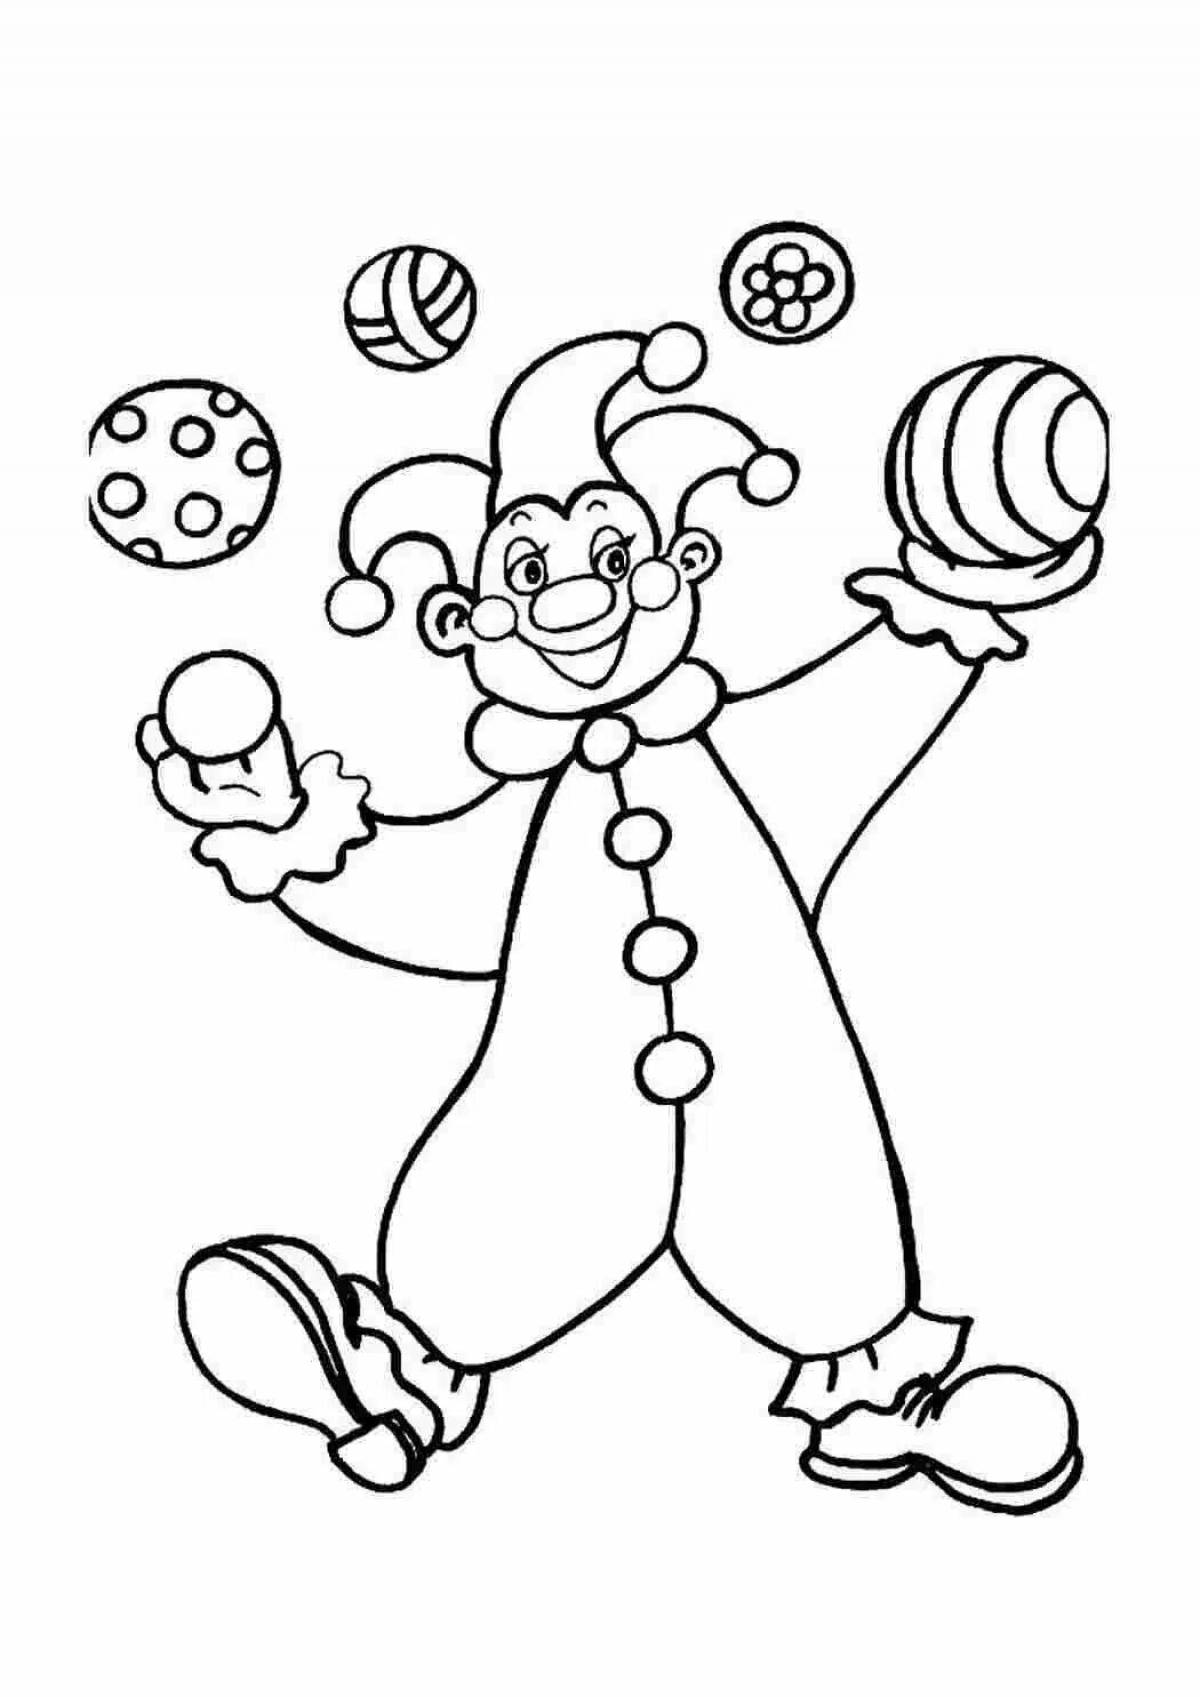 Клоун раскраска для детей 4 5 лет. Клоун раскраска. Клоун для раскрашивания детям. Клоун раскраска для детей. Раскраска весёлый клоун для детей.